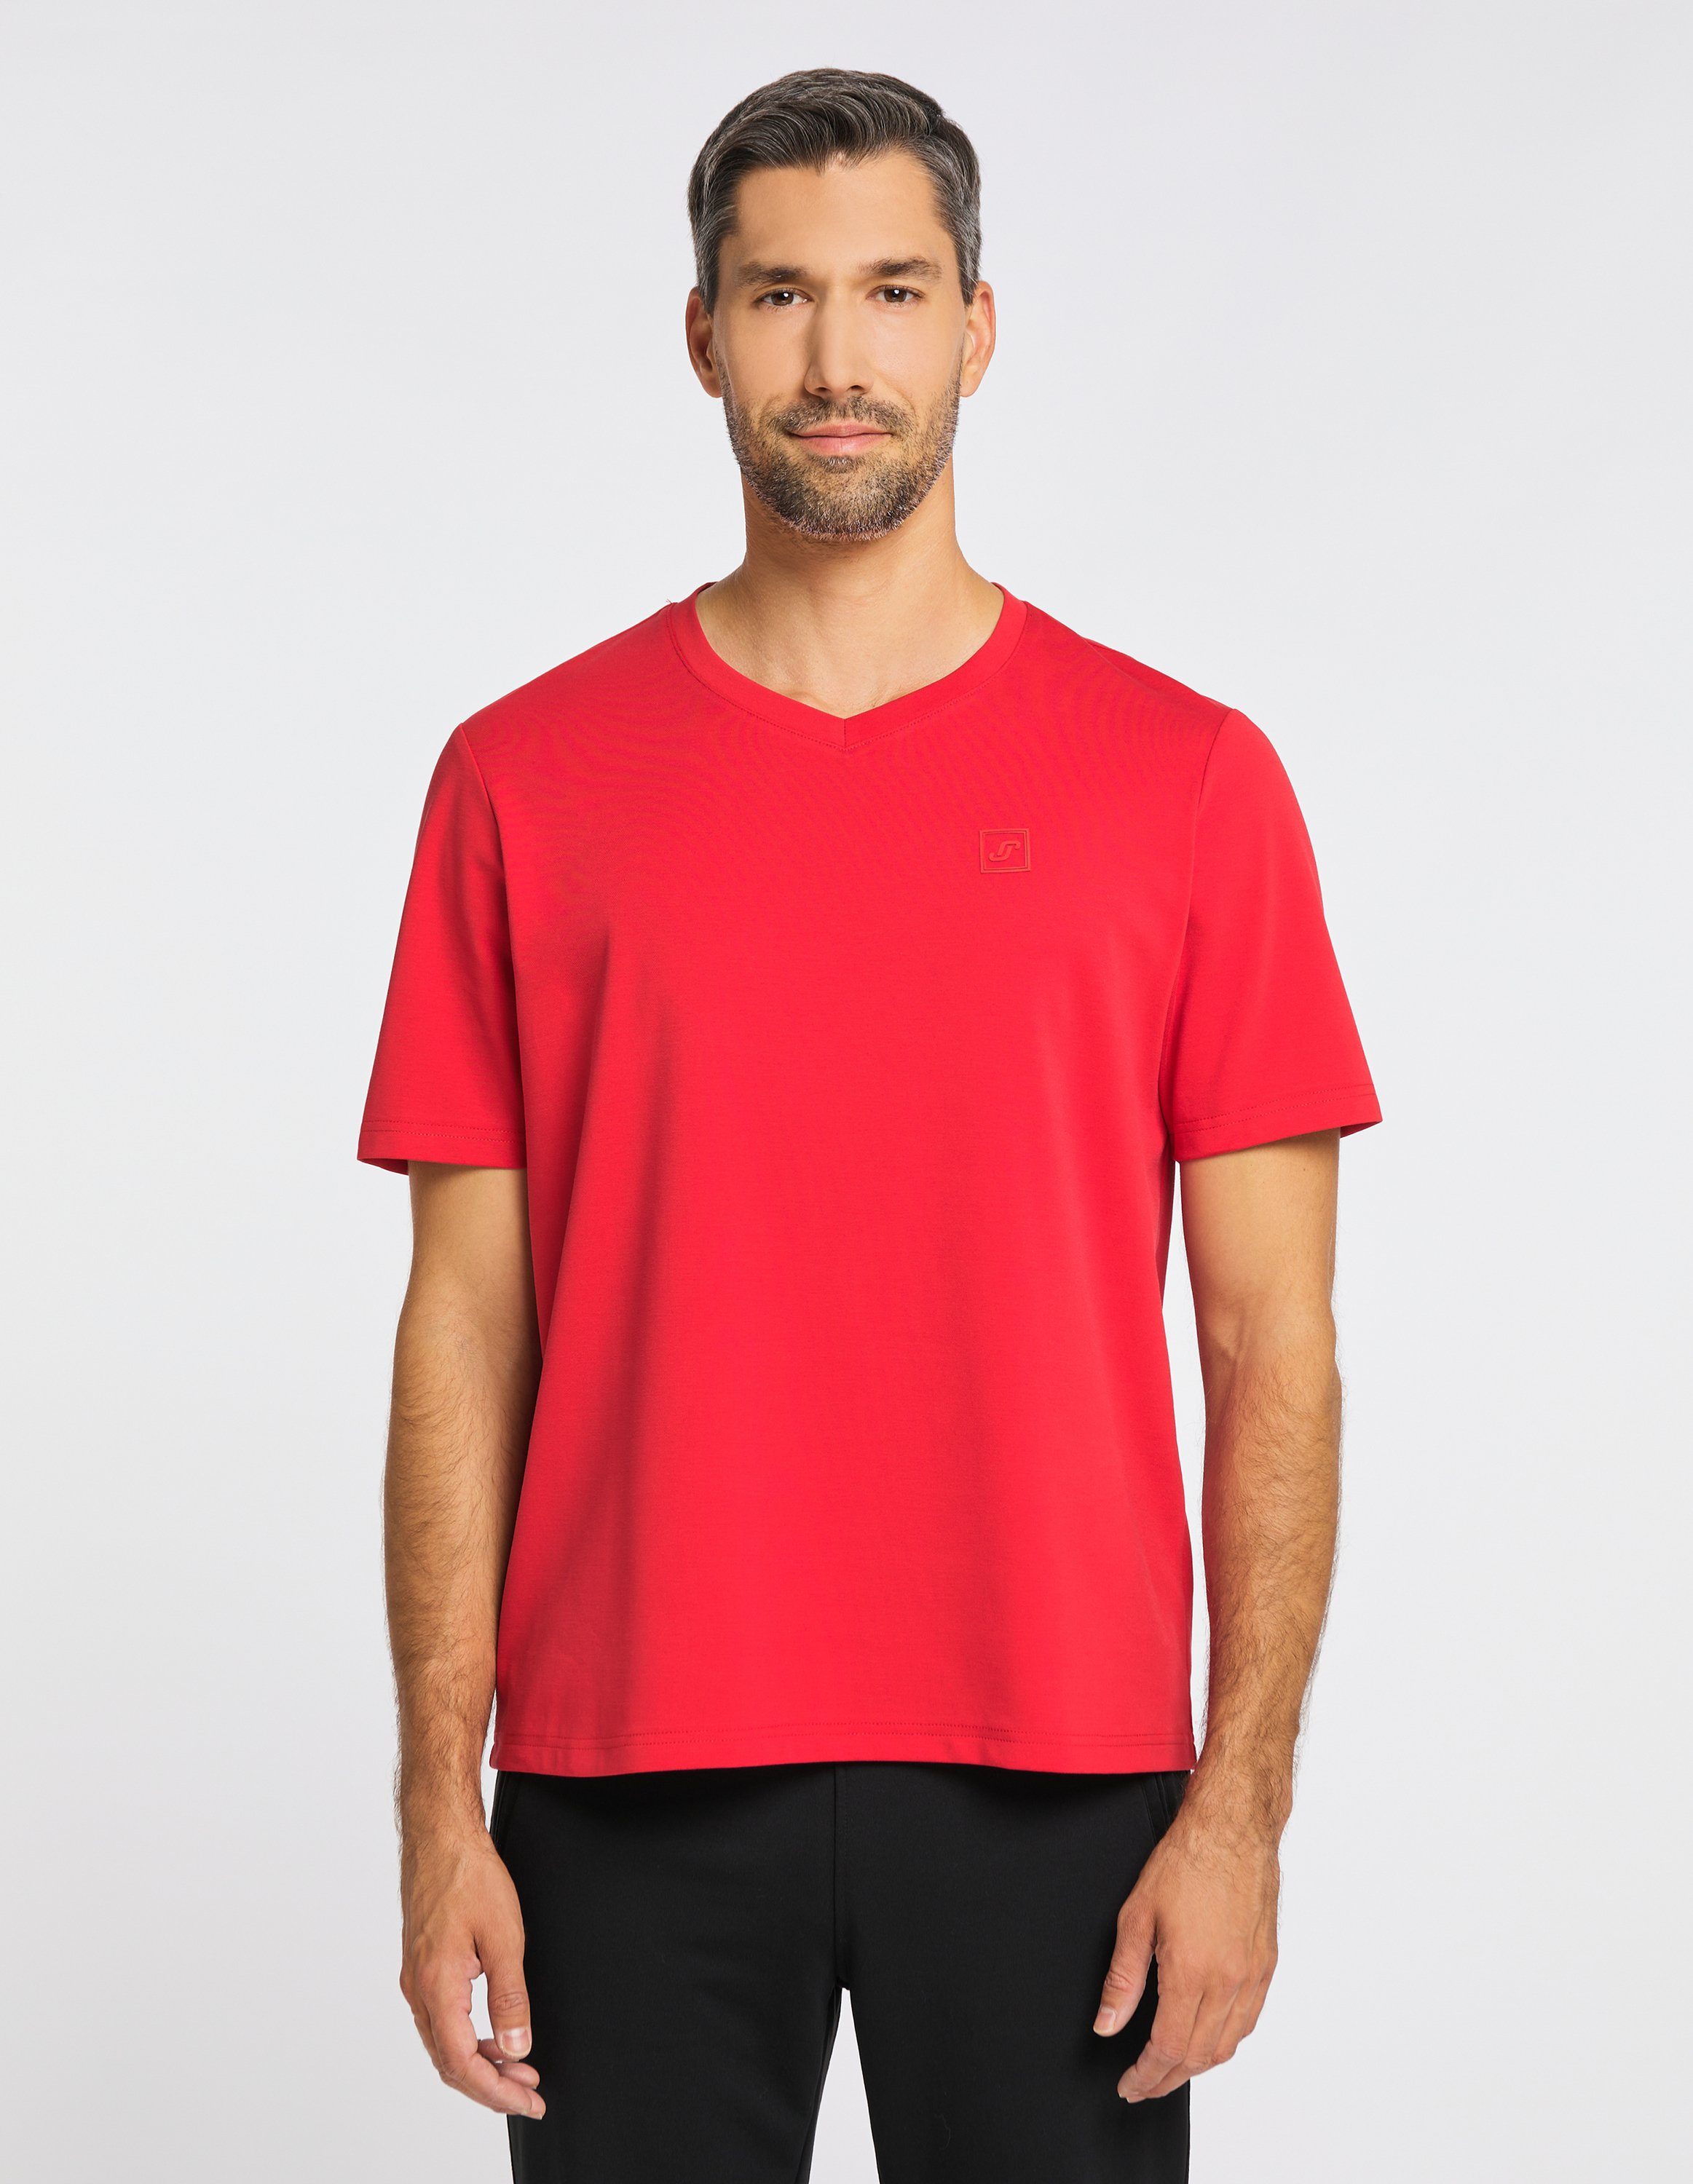 T-Shirt T-Shirt red Sportswear Joy fiery MANUEL